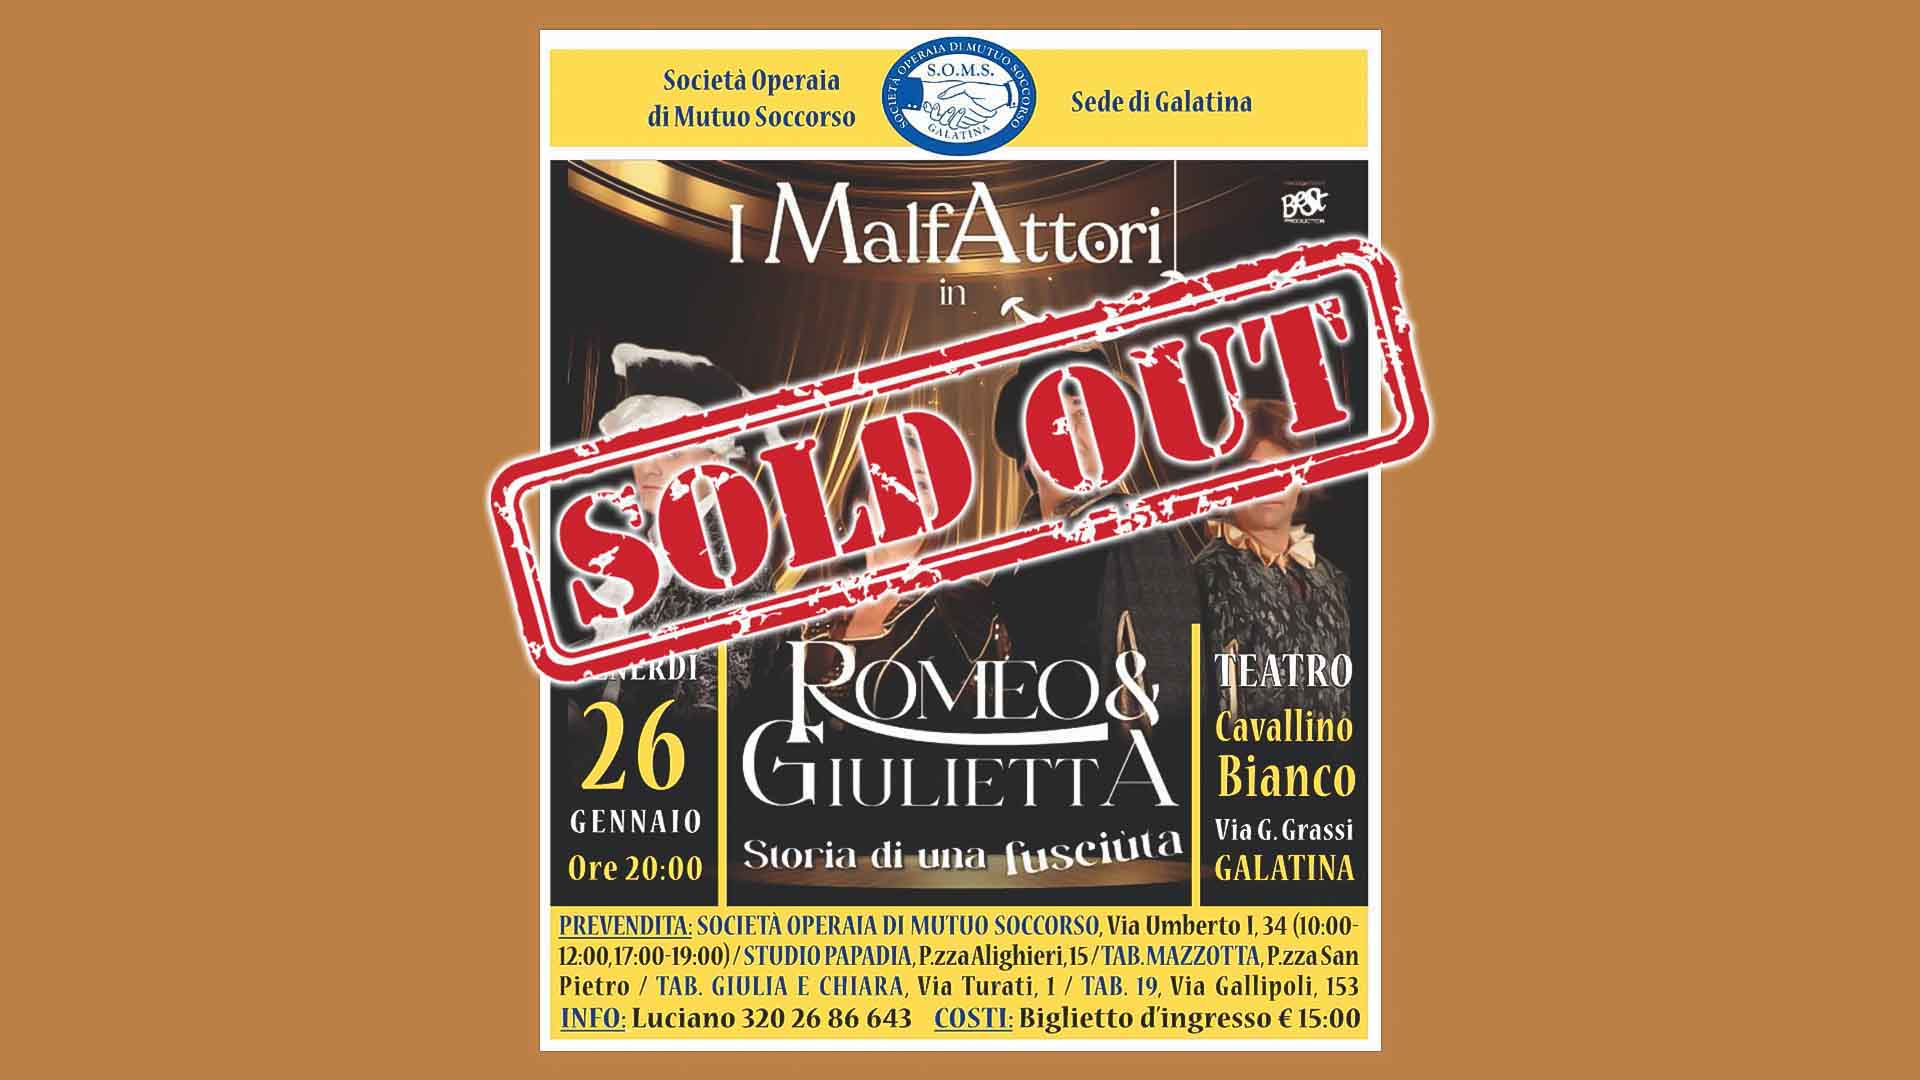 Romeo e Giulietta - I MalfAttori sold-out